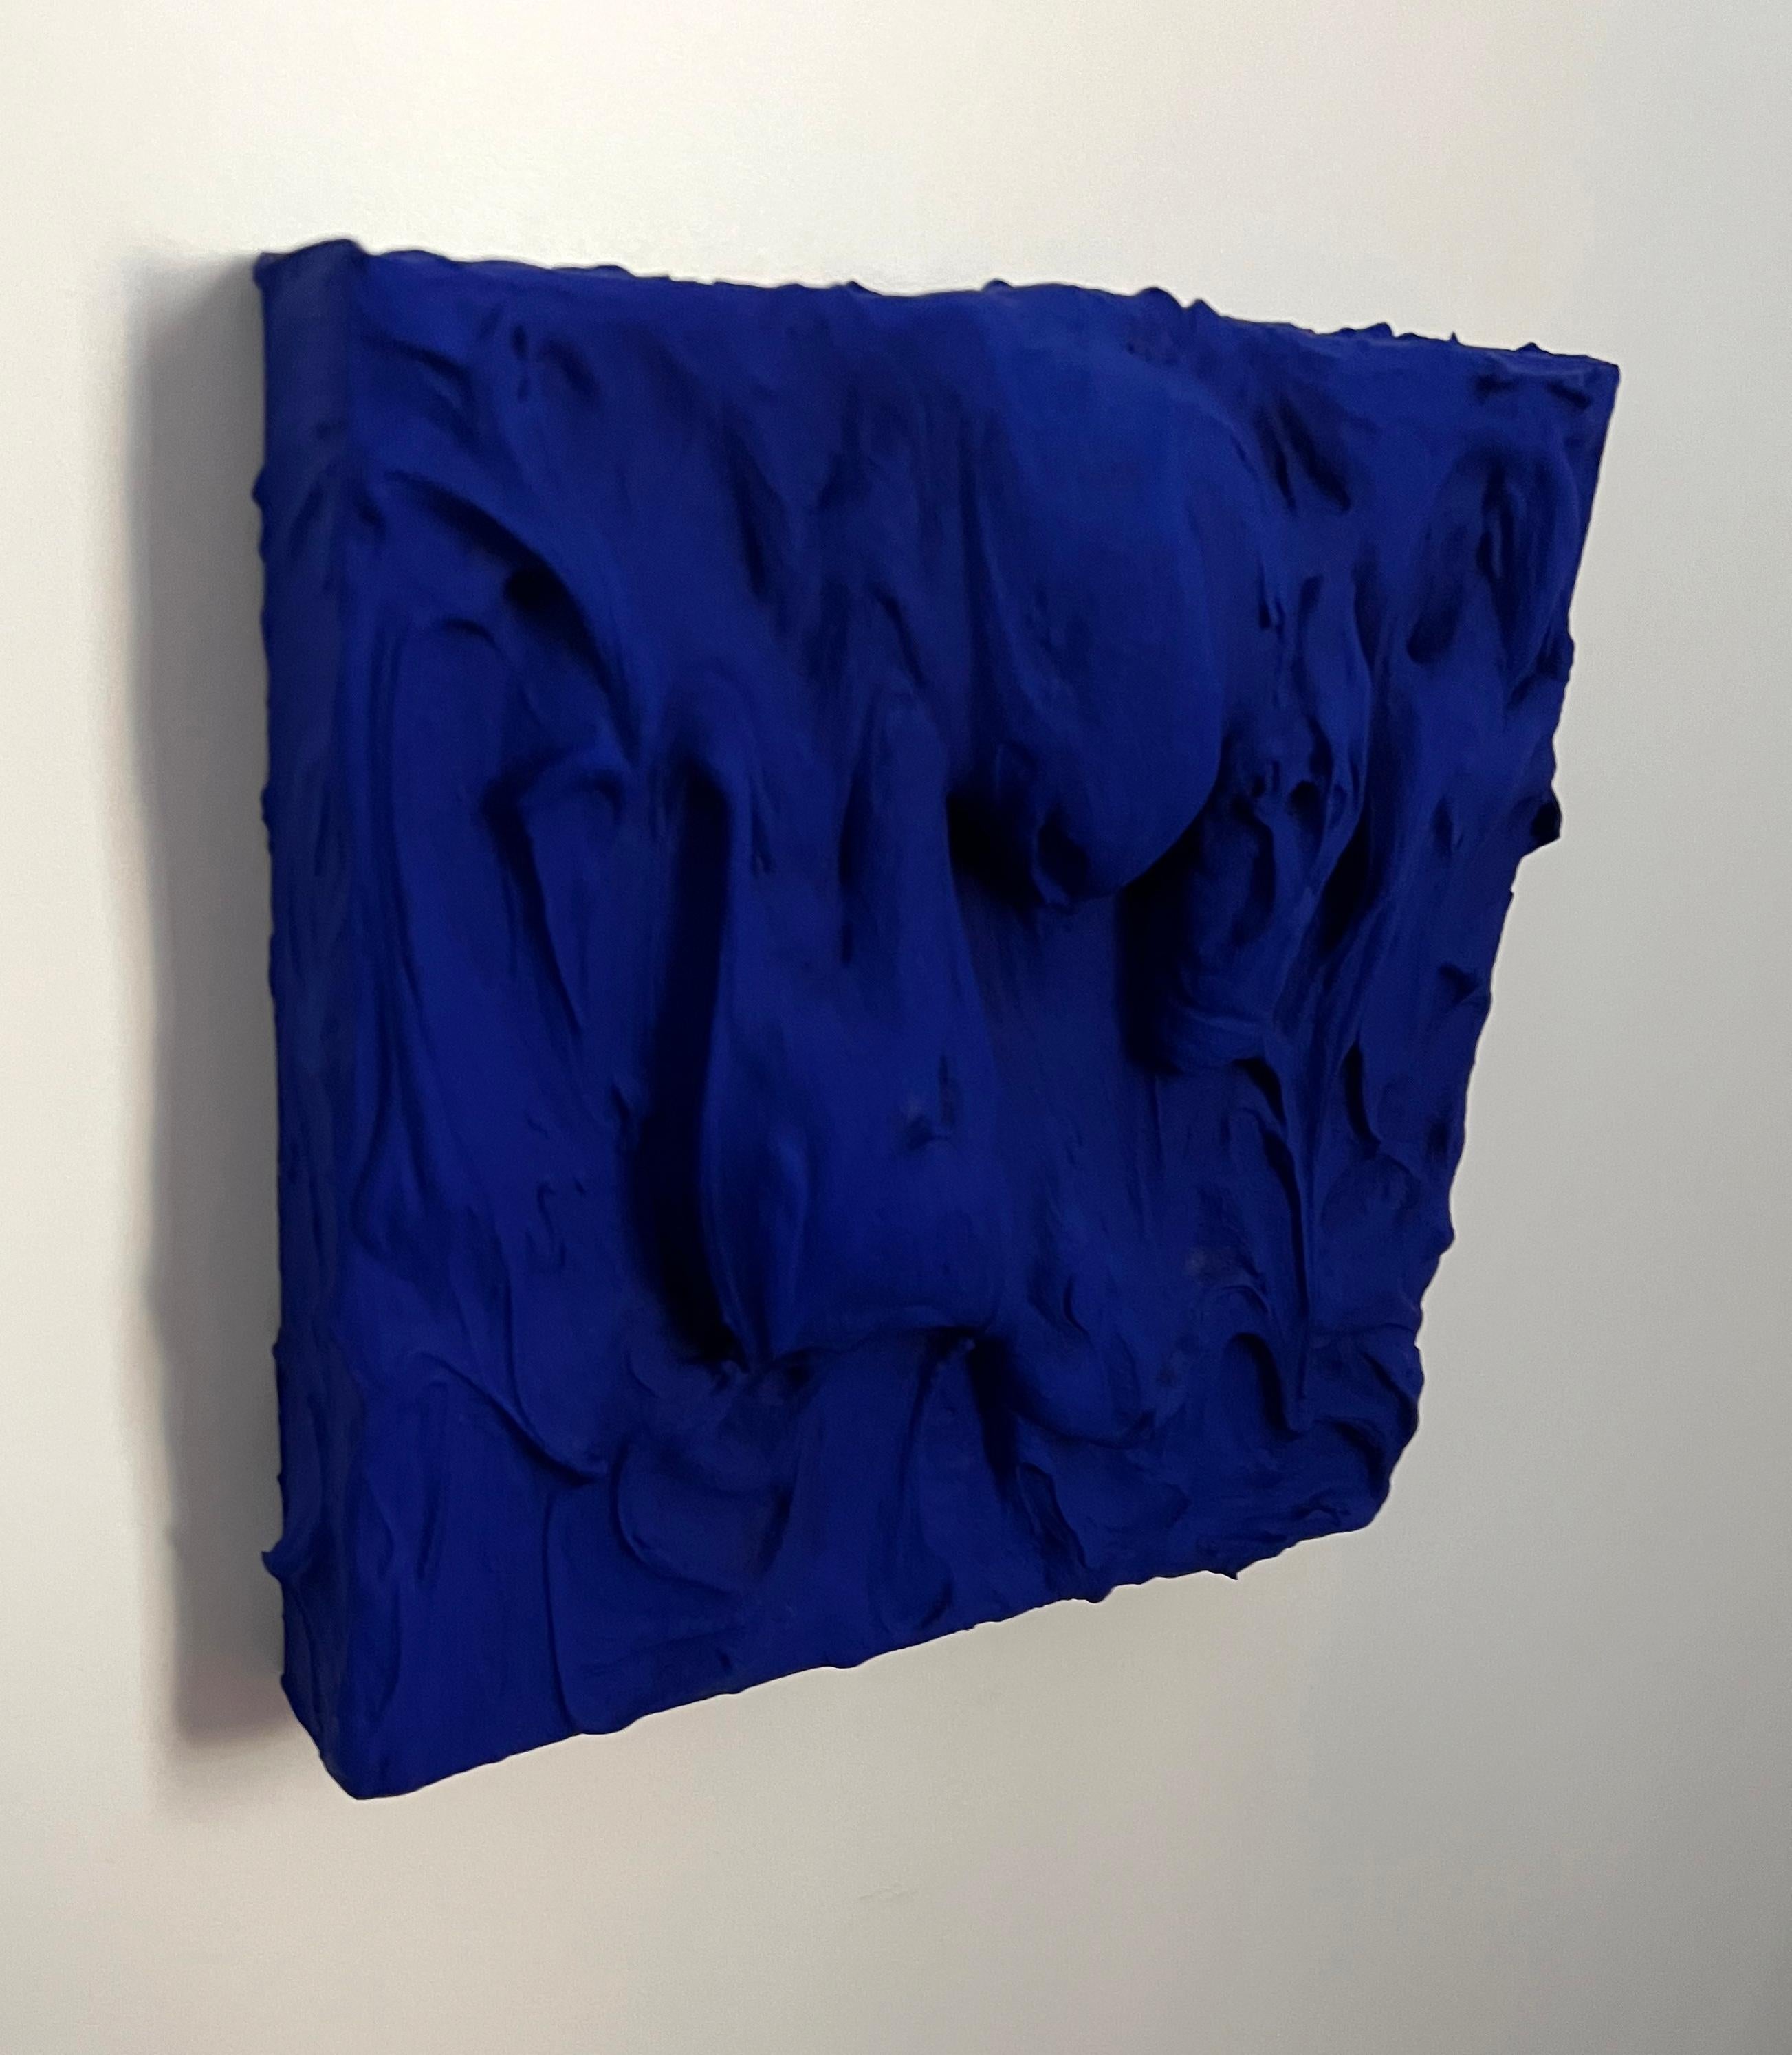 Ultra Blue Excess (driges Impasto-Gemälde, monochromes quadratisches Pop-Art-Design) (Blau), Abstract Painting, von Chloe Hedden